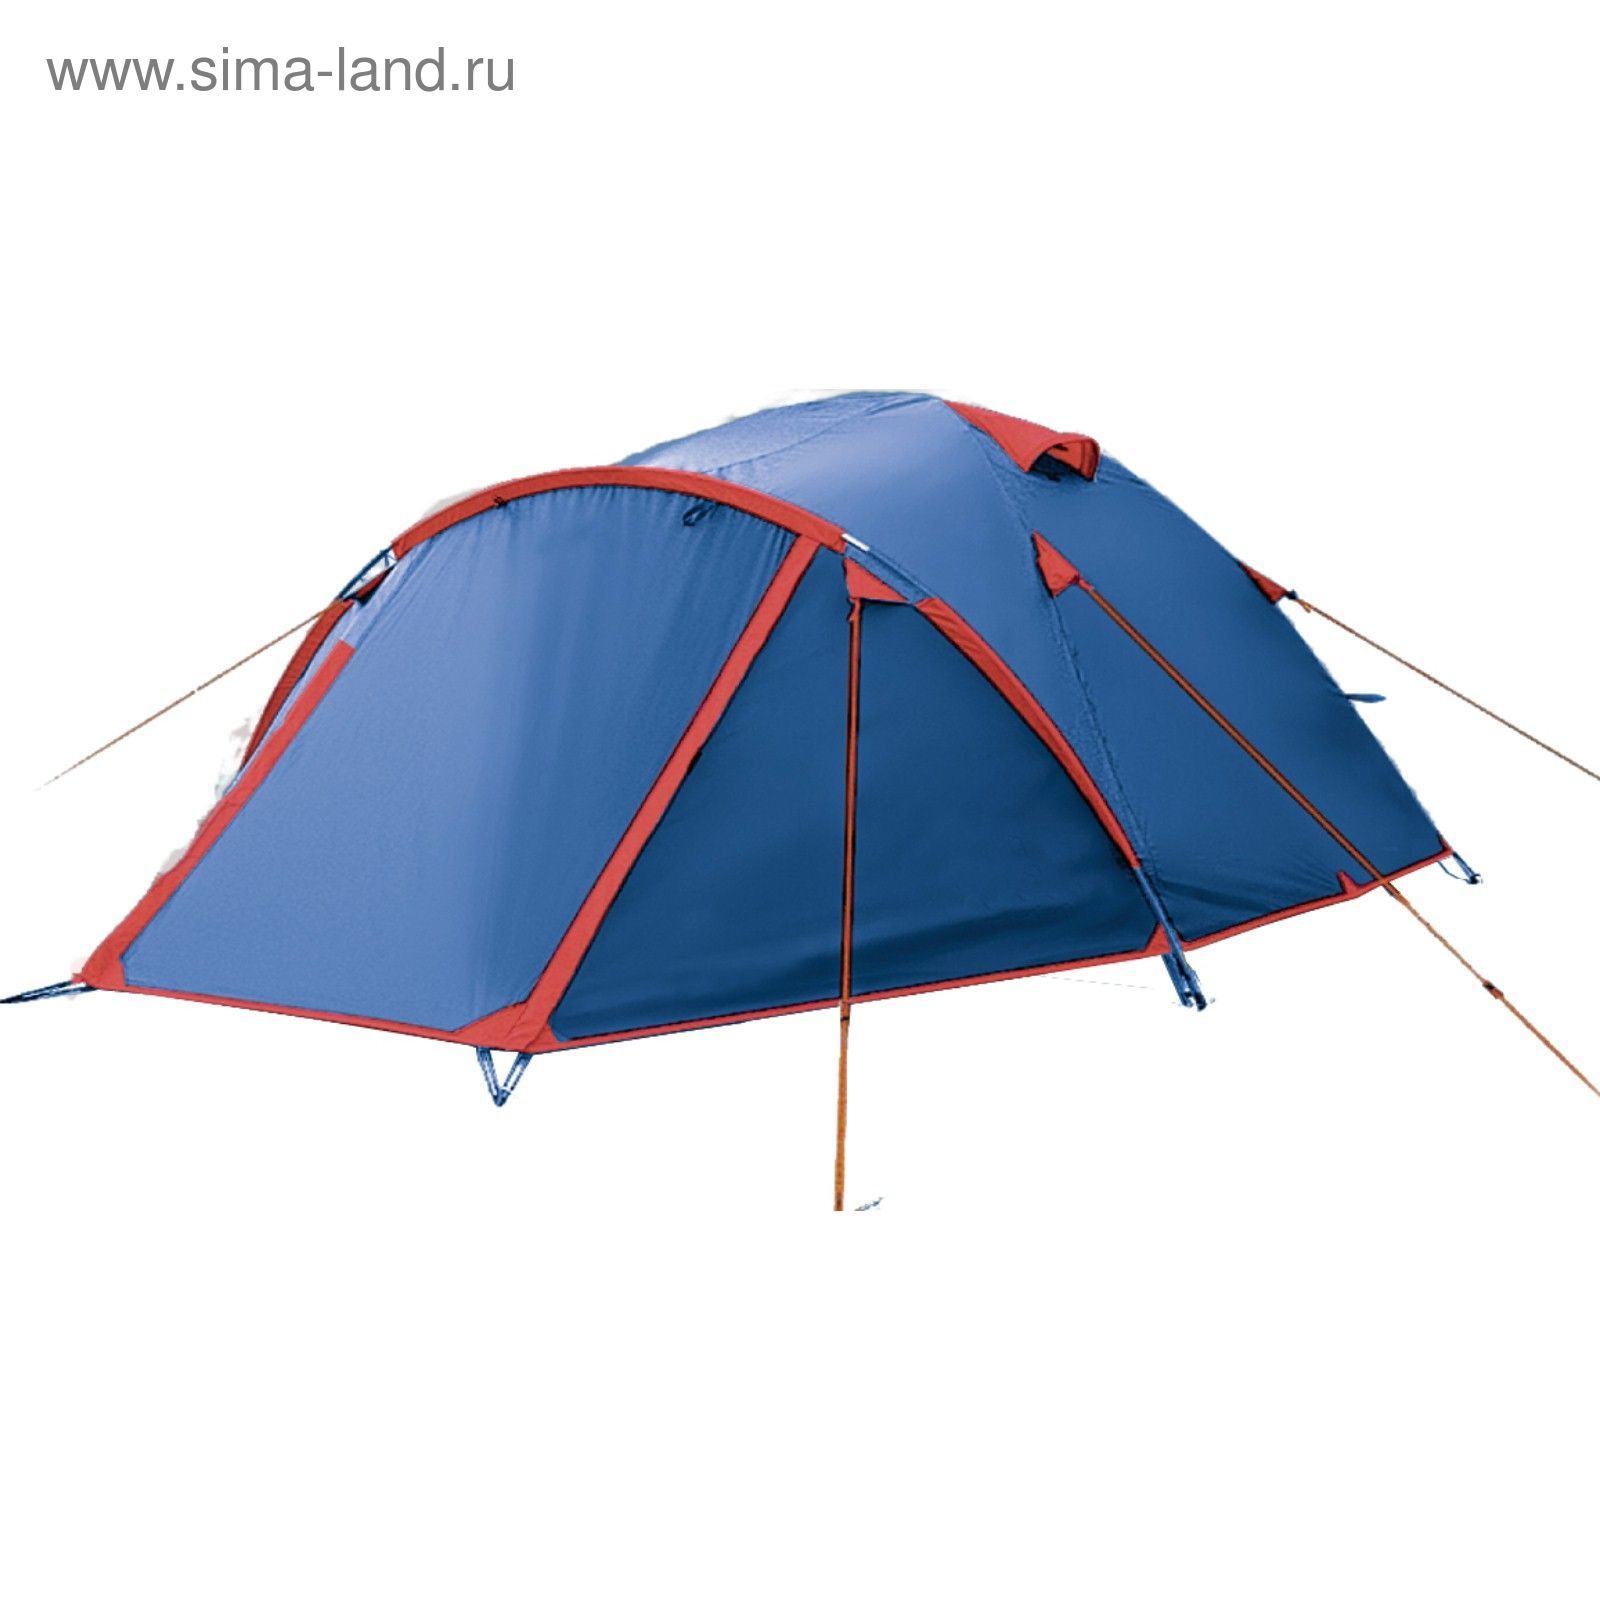 Палатка серия "Basic line" Vega, синяя, 4-х местная